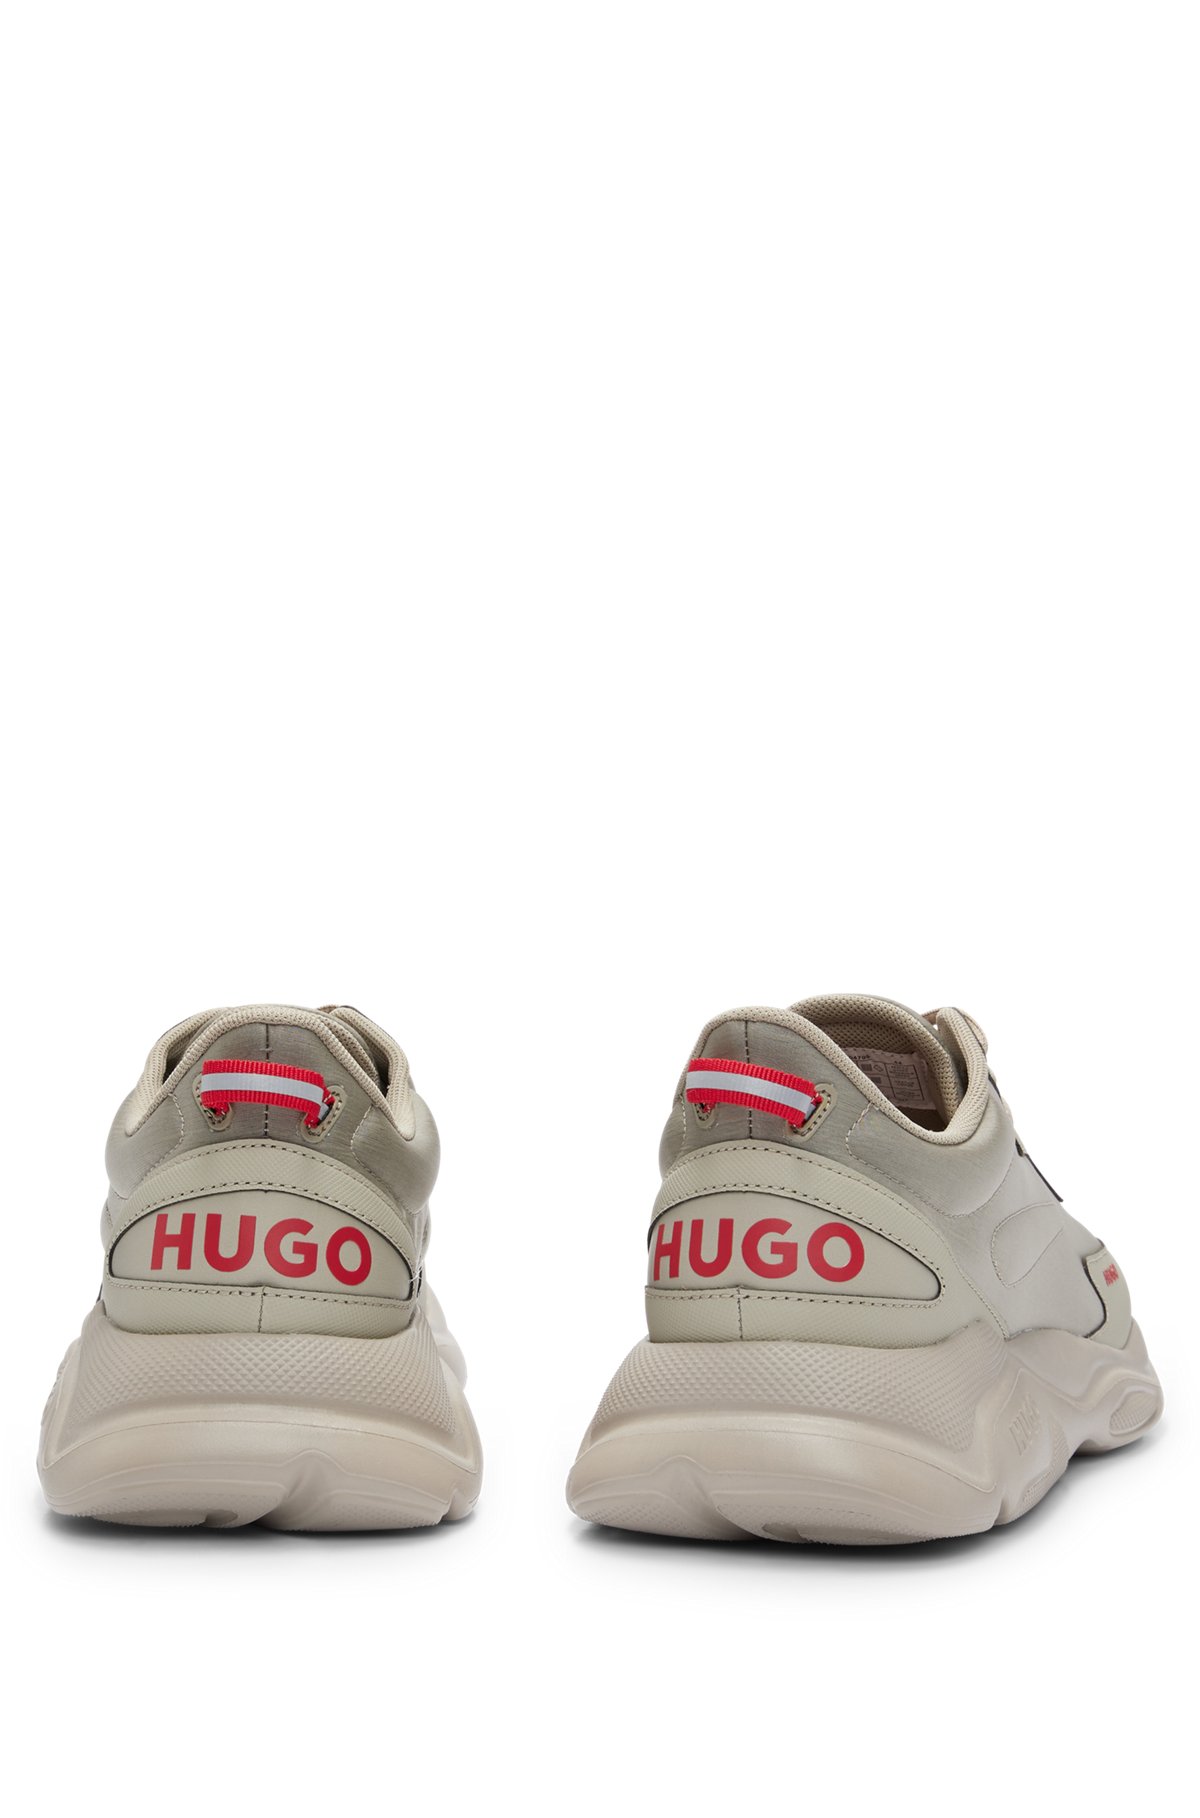 HUGO - ミックスマテリアル レースアップスニーカー フェイクレザー